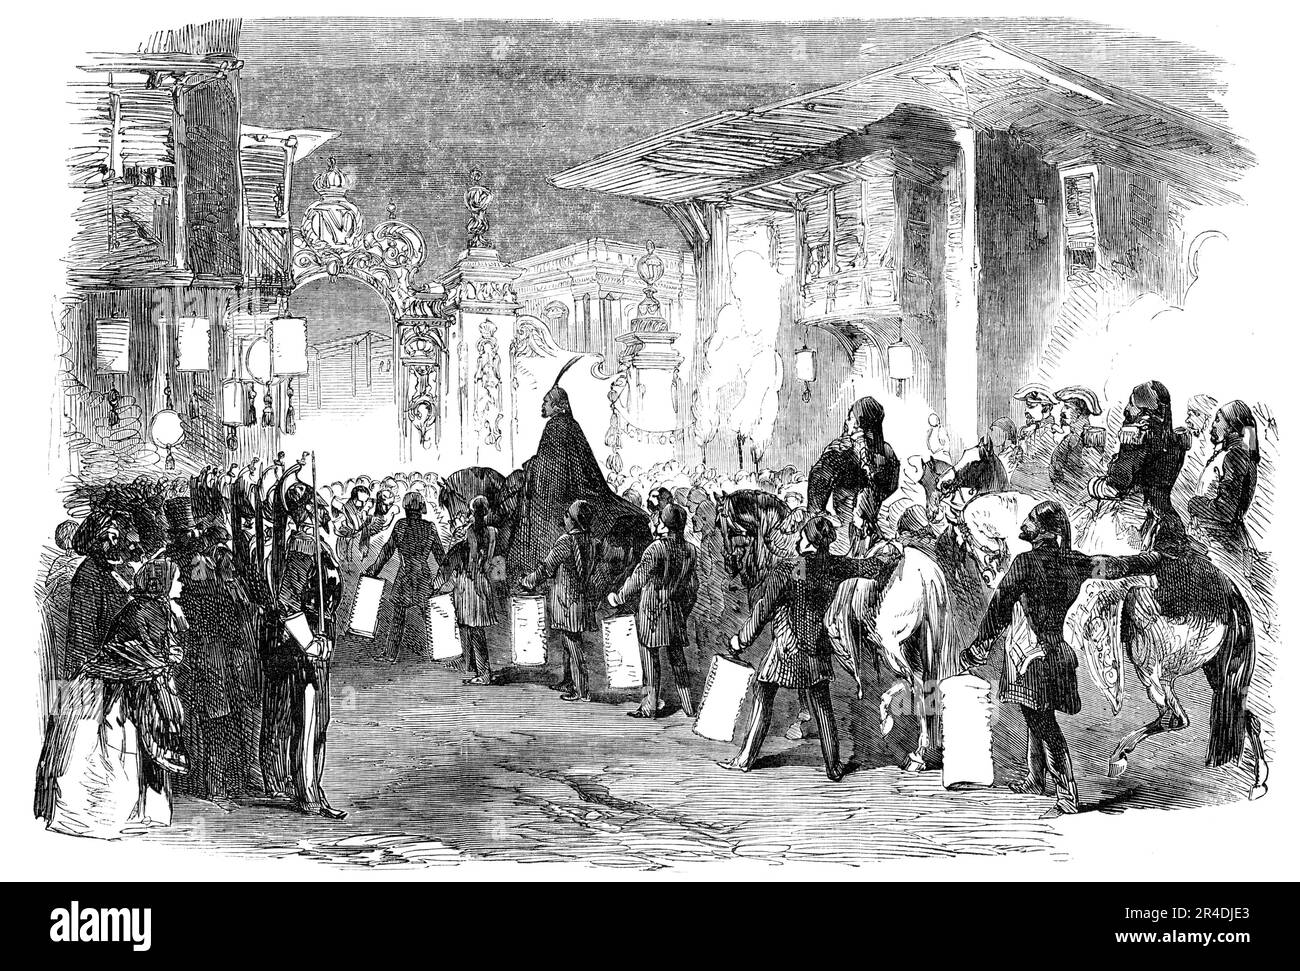 Le Sultan se poursuit au bal donné par l'Ambassadeur de France, à Constantinople, 1856. « Le Sultan... accompagné de ses ministres et des officiers principaux de son foyer, est arrivé à l'ambassade de France peu après huit heures, près d'une heure plus tôt que prévu. Les armes placées dans le jardin de l'ambassade ont tiré un salut royal. Les rues de Pera, par lesquelles le Sultan passa de Tophana, étaient illuminées, principalement avec des lanternes chinoises et des lampes variées, et le devant de l'ambassade était brillamment éclairé avec de grandes lampes à huile; et dans différentes parties de l'ag Banque D'Images